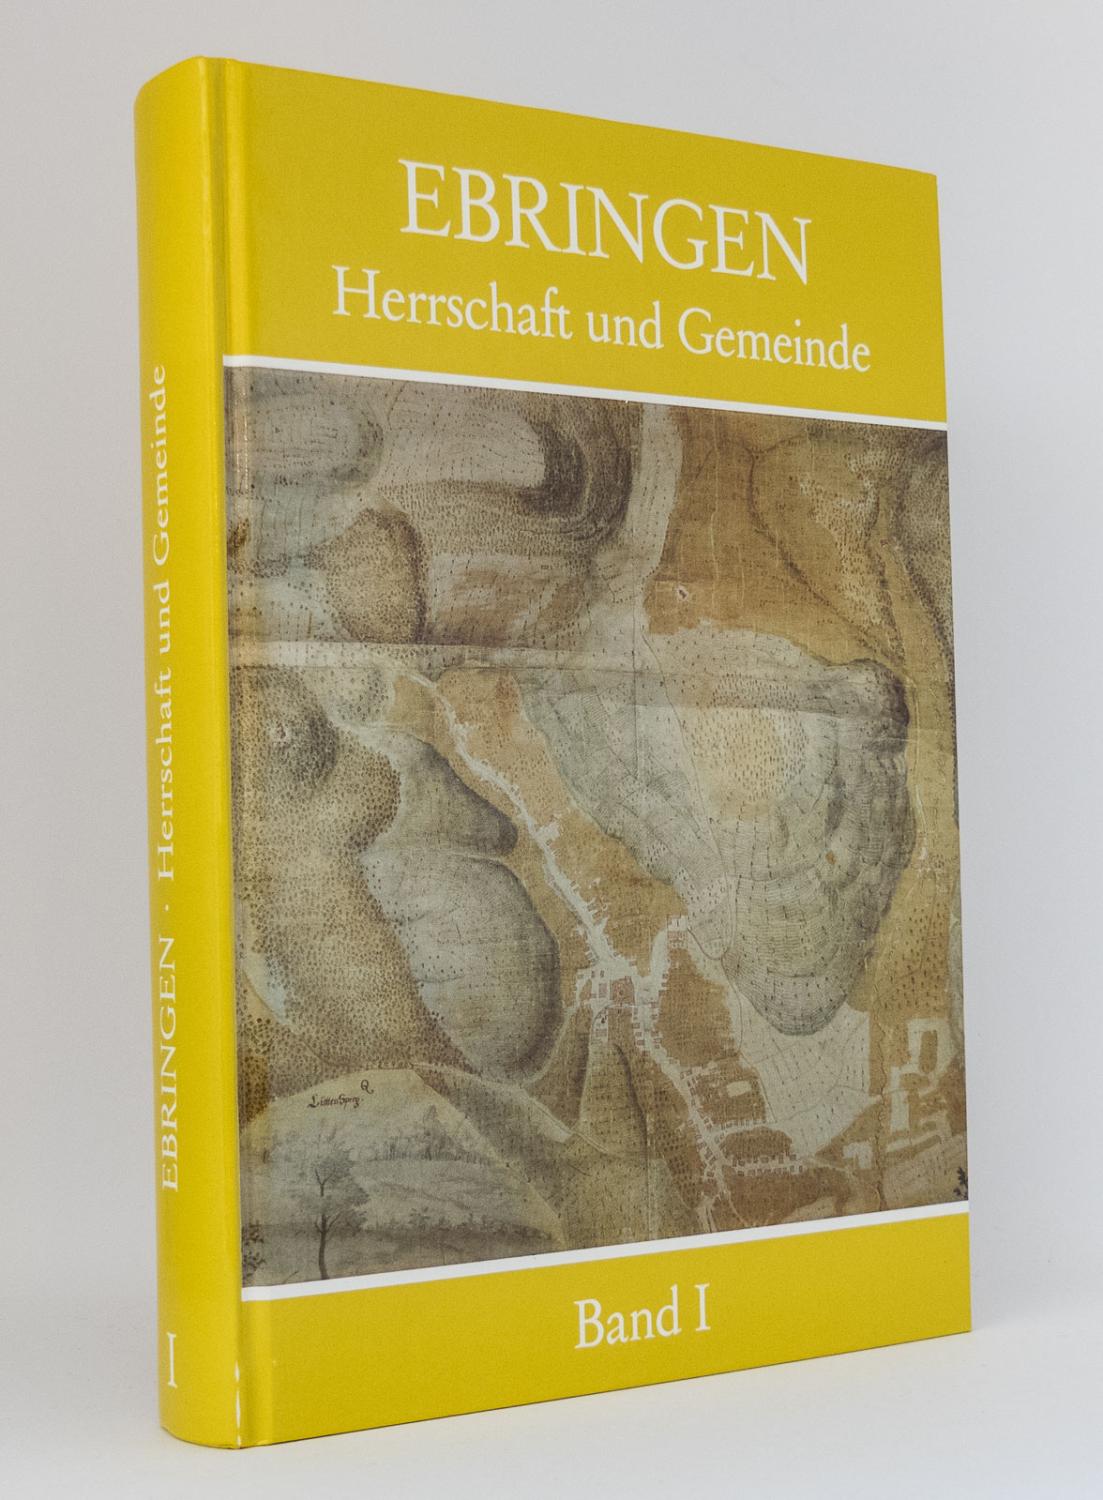 Ebringen - Herrschaft und Gemeinde, Band 1 - Schott, Clausdieter [Hg.]; Weeger, Edmund [Hg.]